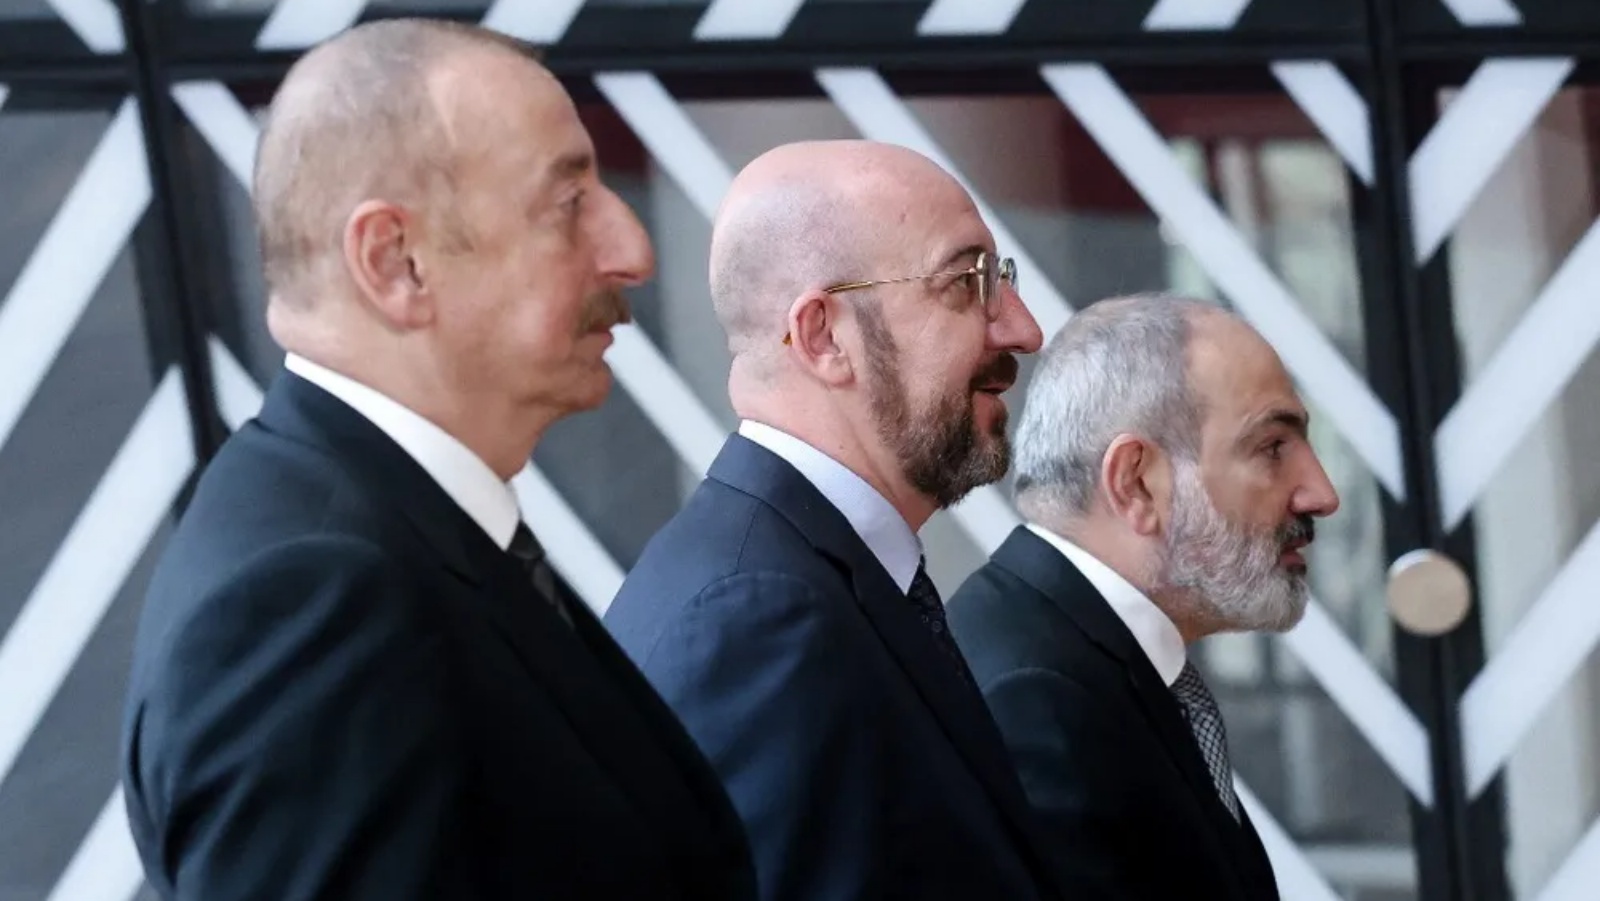 (من اليسار إلى اليمين) الرئيس الأذربيجاني إلهام علييف، ورئيس المجلس الأوروبي شارل ميشيل، ورئيس الوزراء الأرميني نيكول باشينيان في بروكسل، بلجيكا.